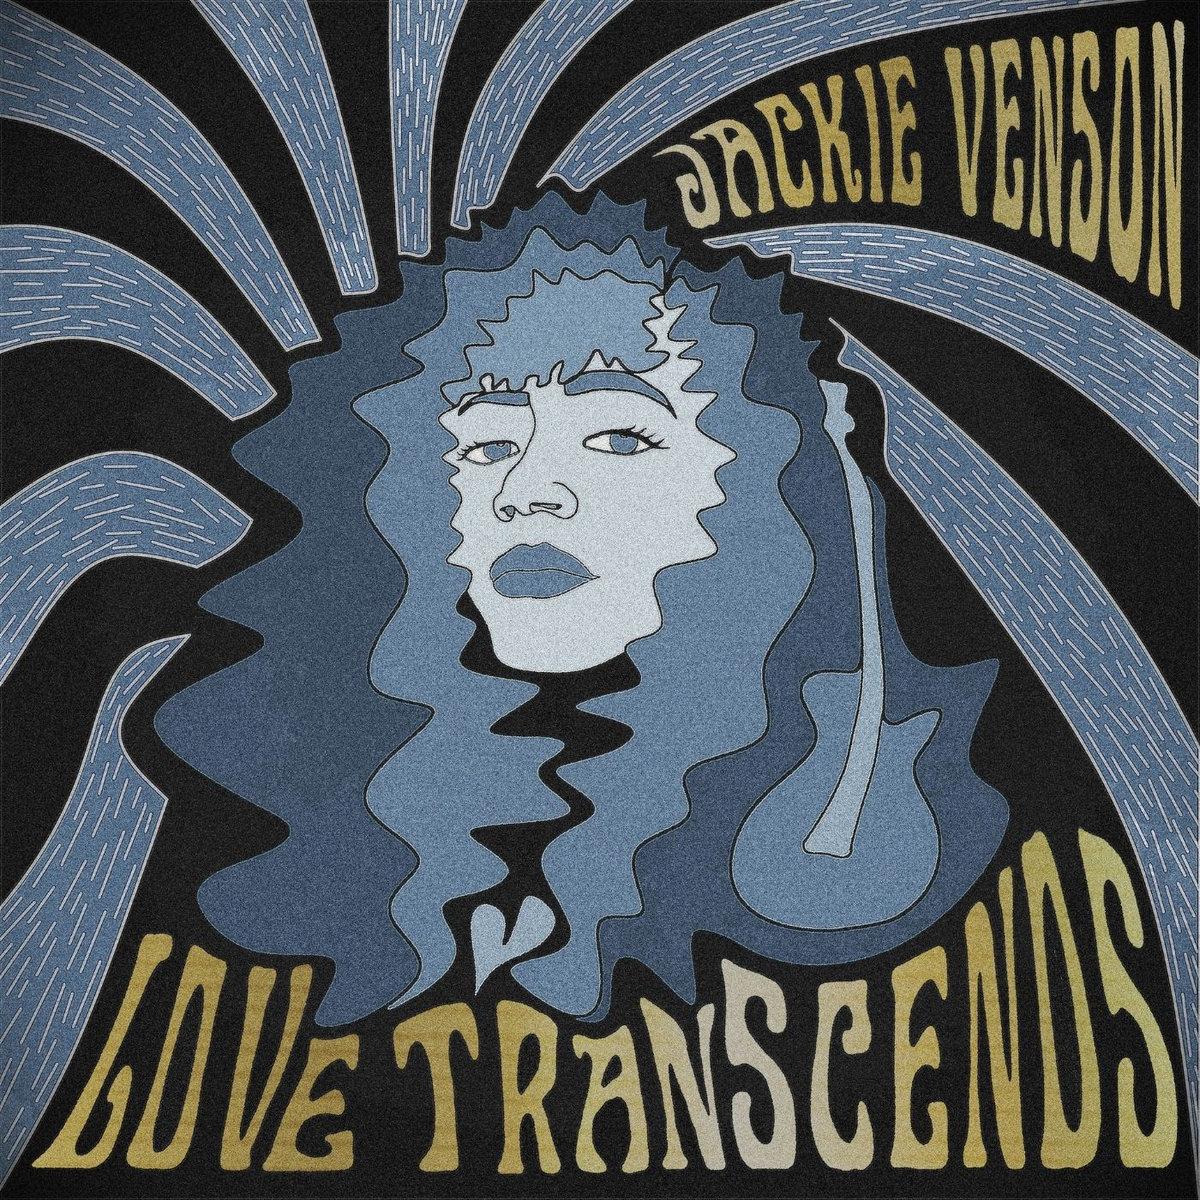 Jackie Venson - Love Transcends